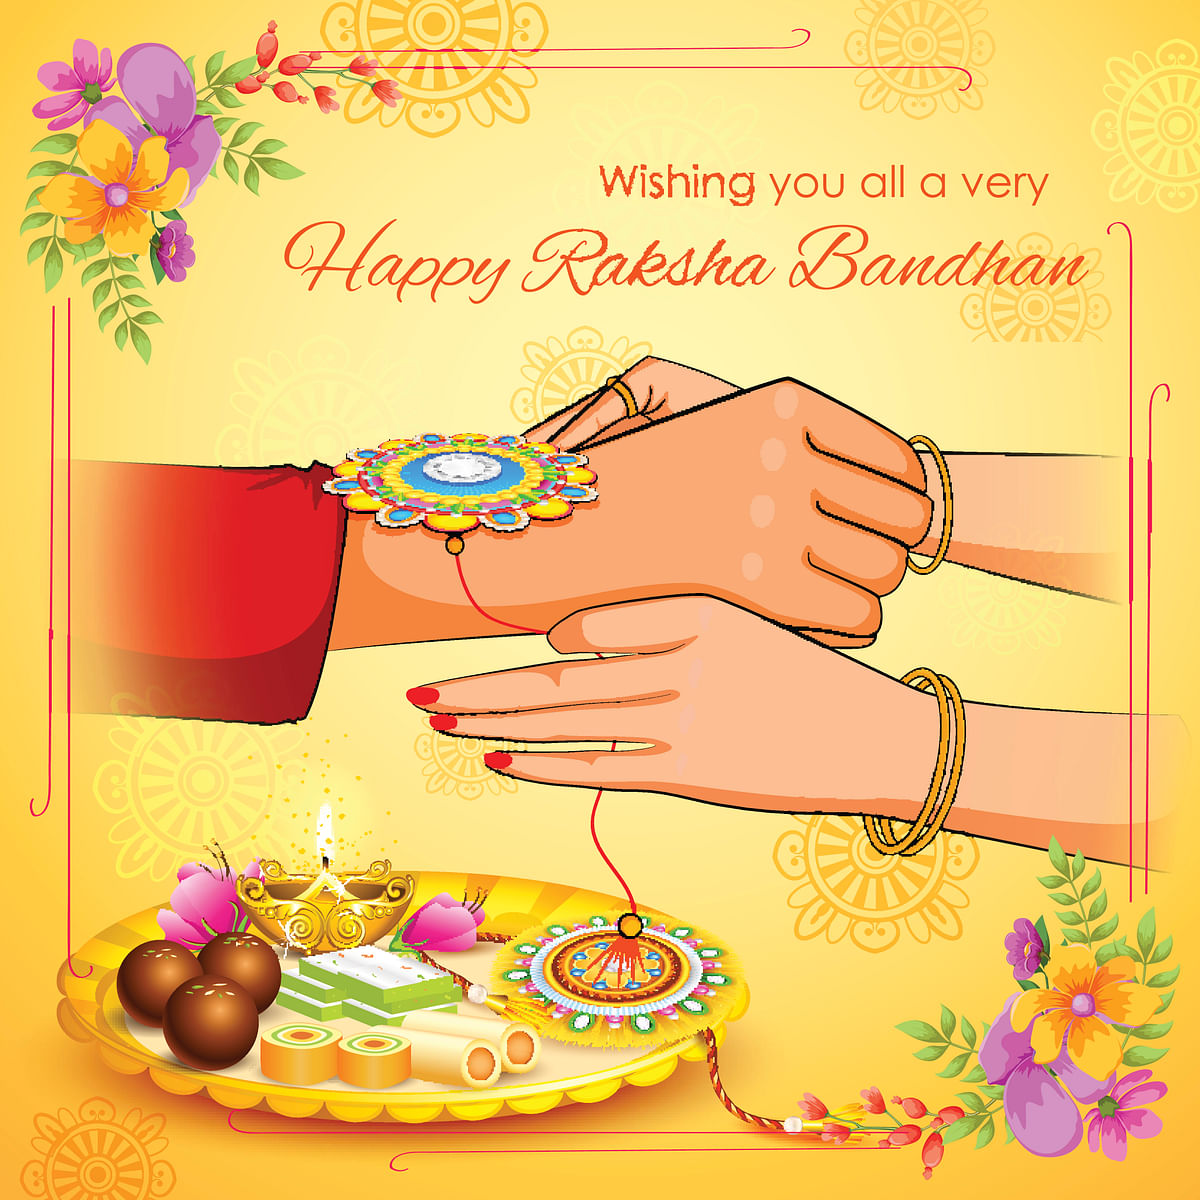 Raksha Bandhan wishes in hindi,english,gujarati,marathi,tamil ...